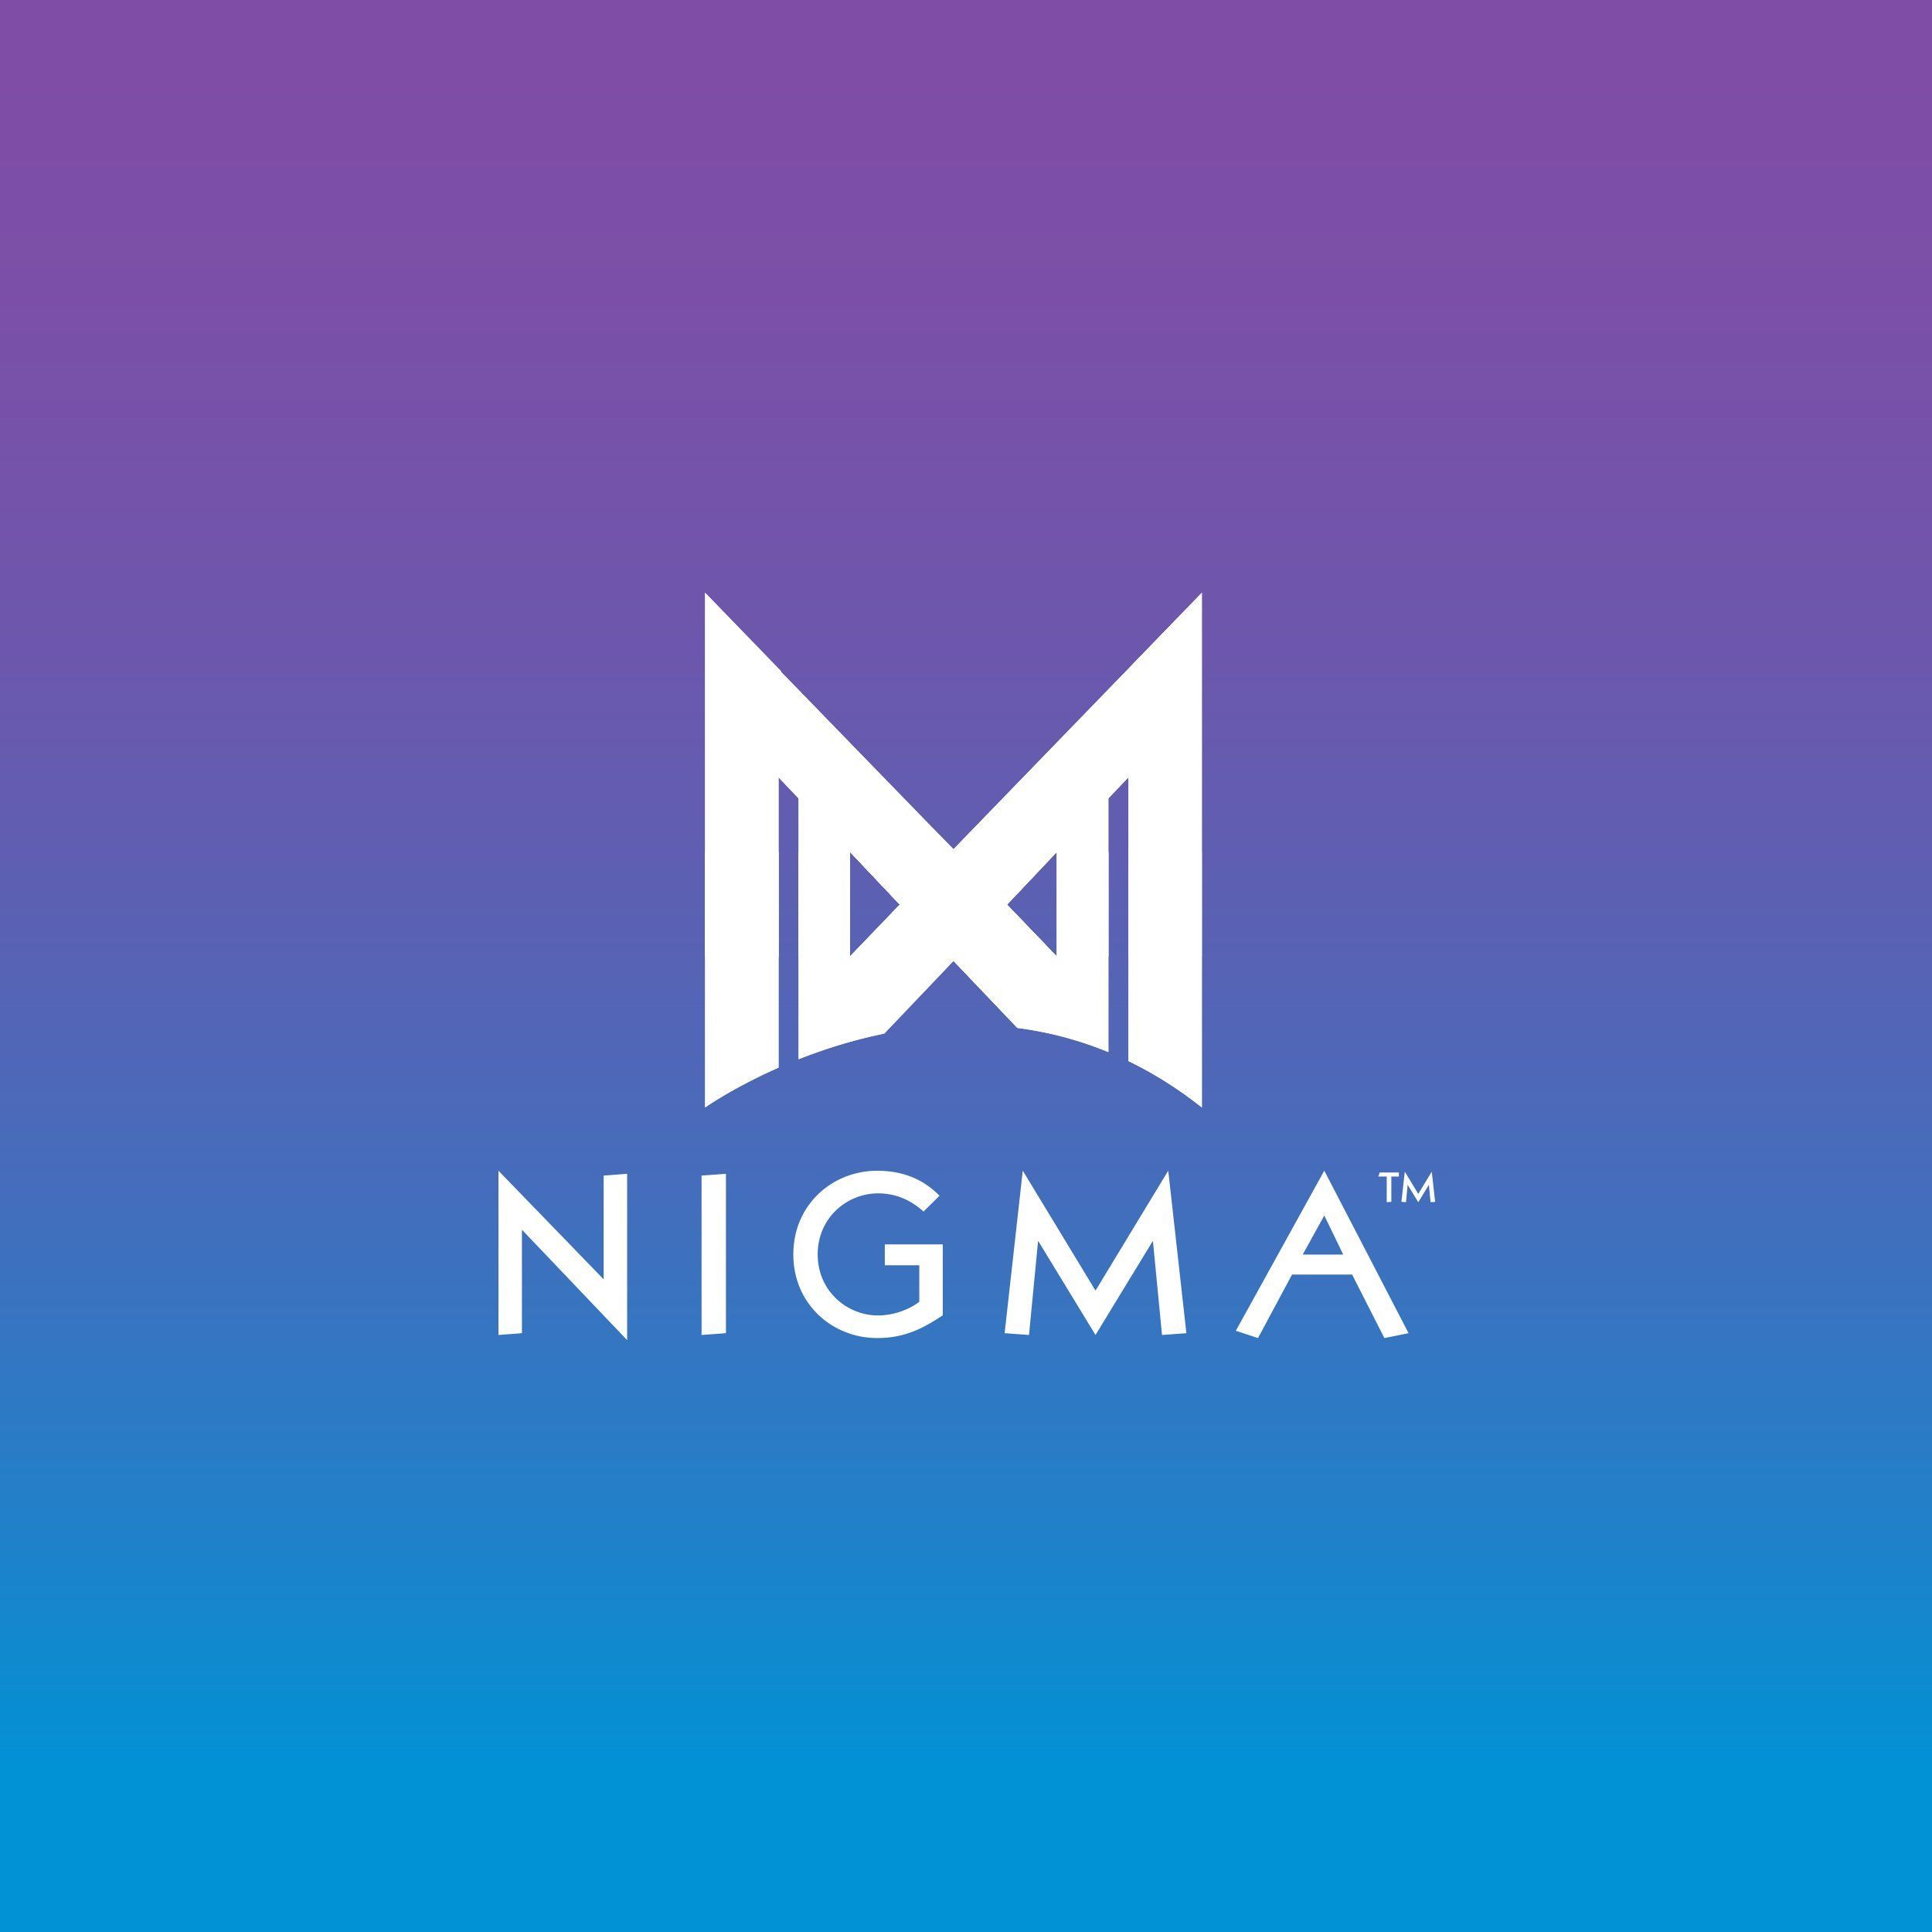 Nigma Galaxy обыграла Alliance в рамках Dota Pro Circuit для Европы